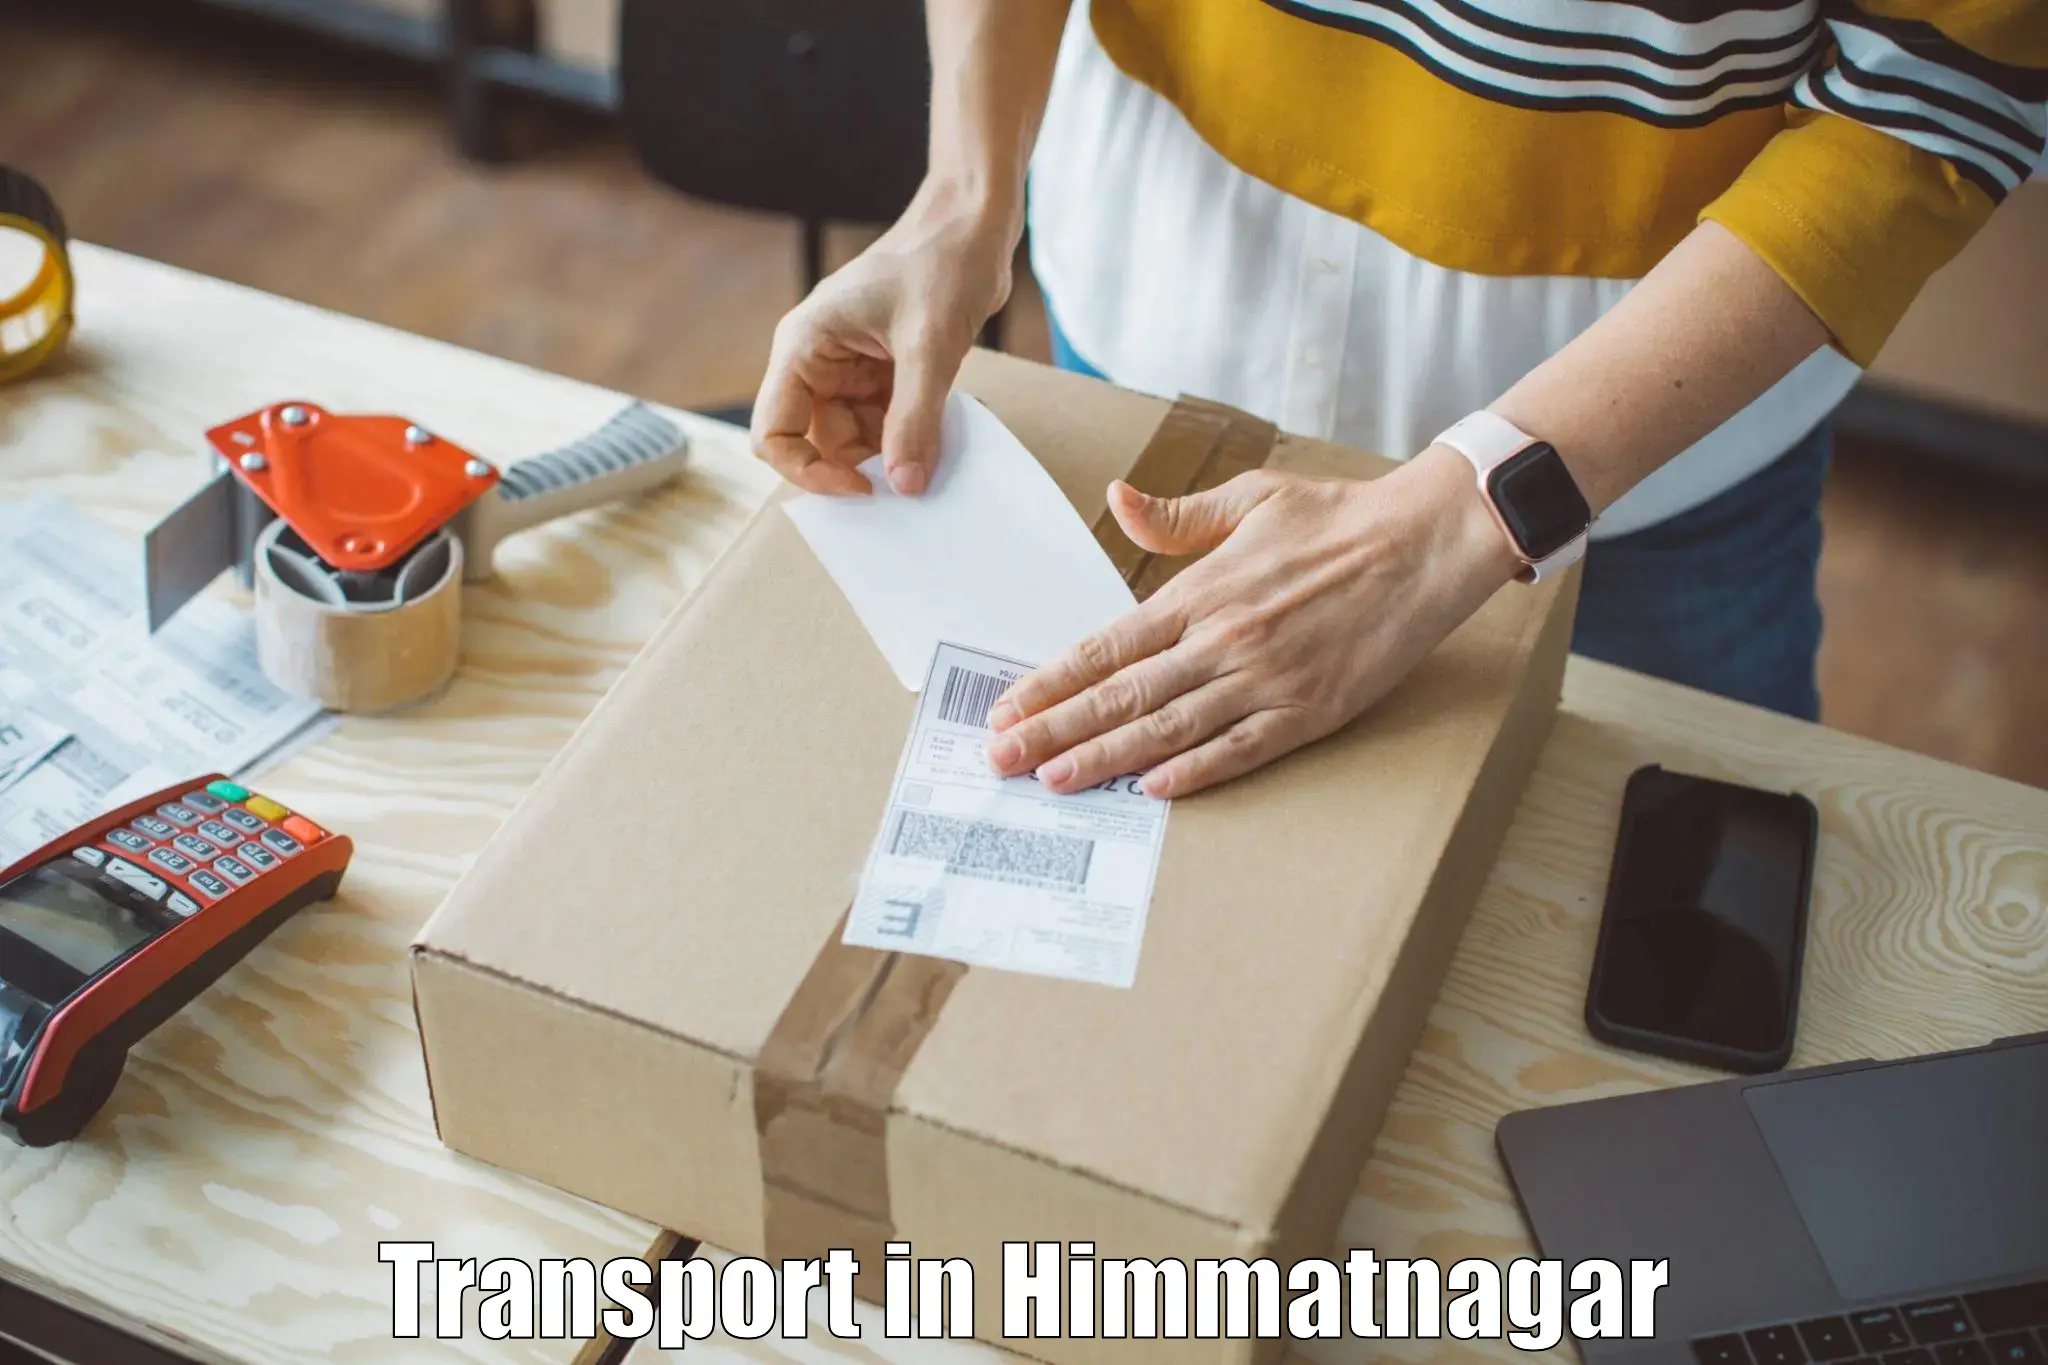 Daily parcel service transport in Himmatnagar